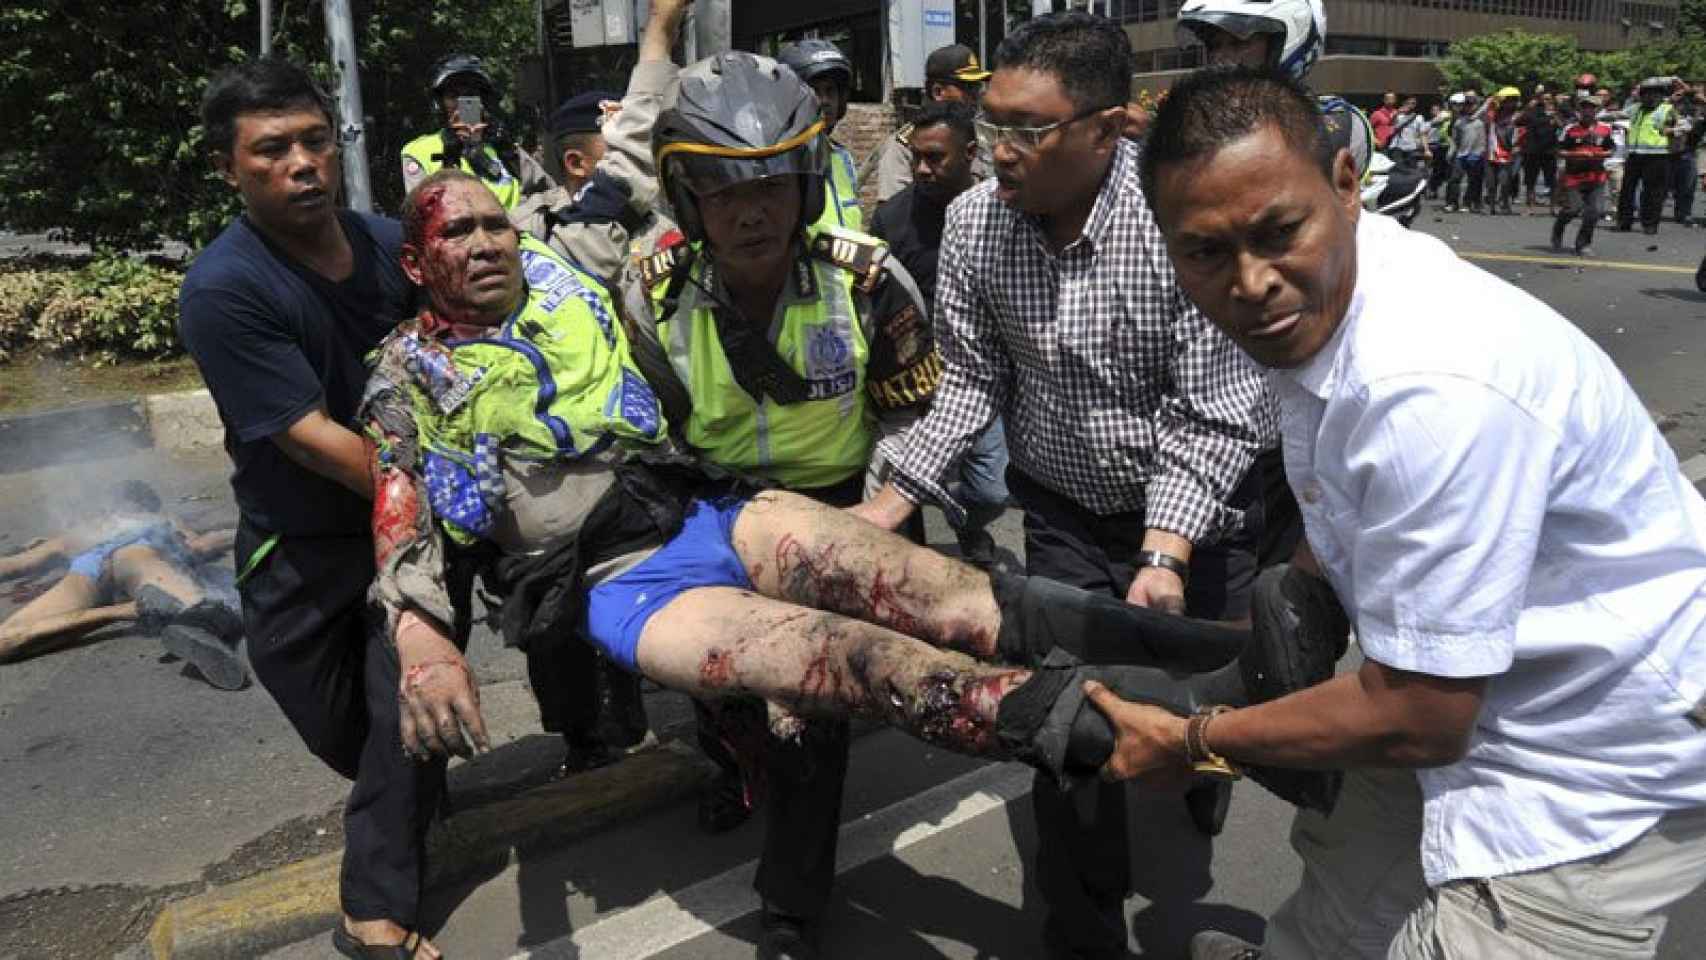 Los ataques han dejado siete muertos en Yakarta, la capital de Indonesia.